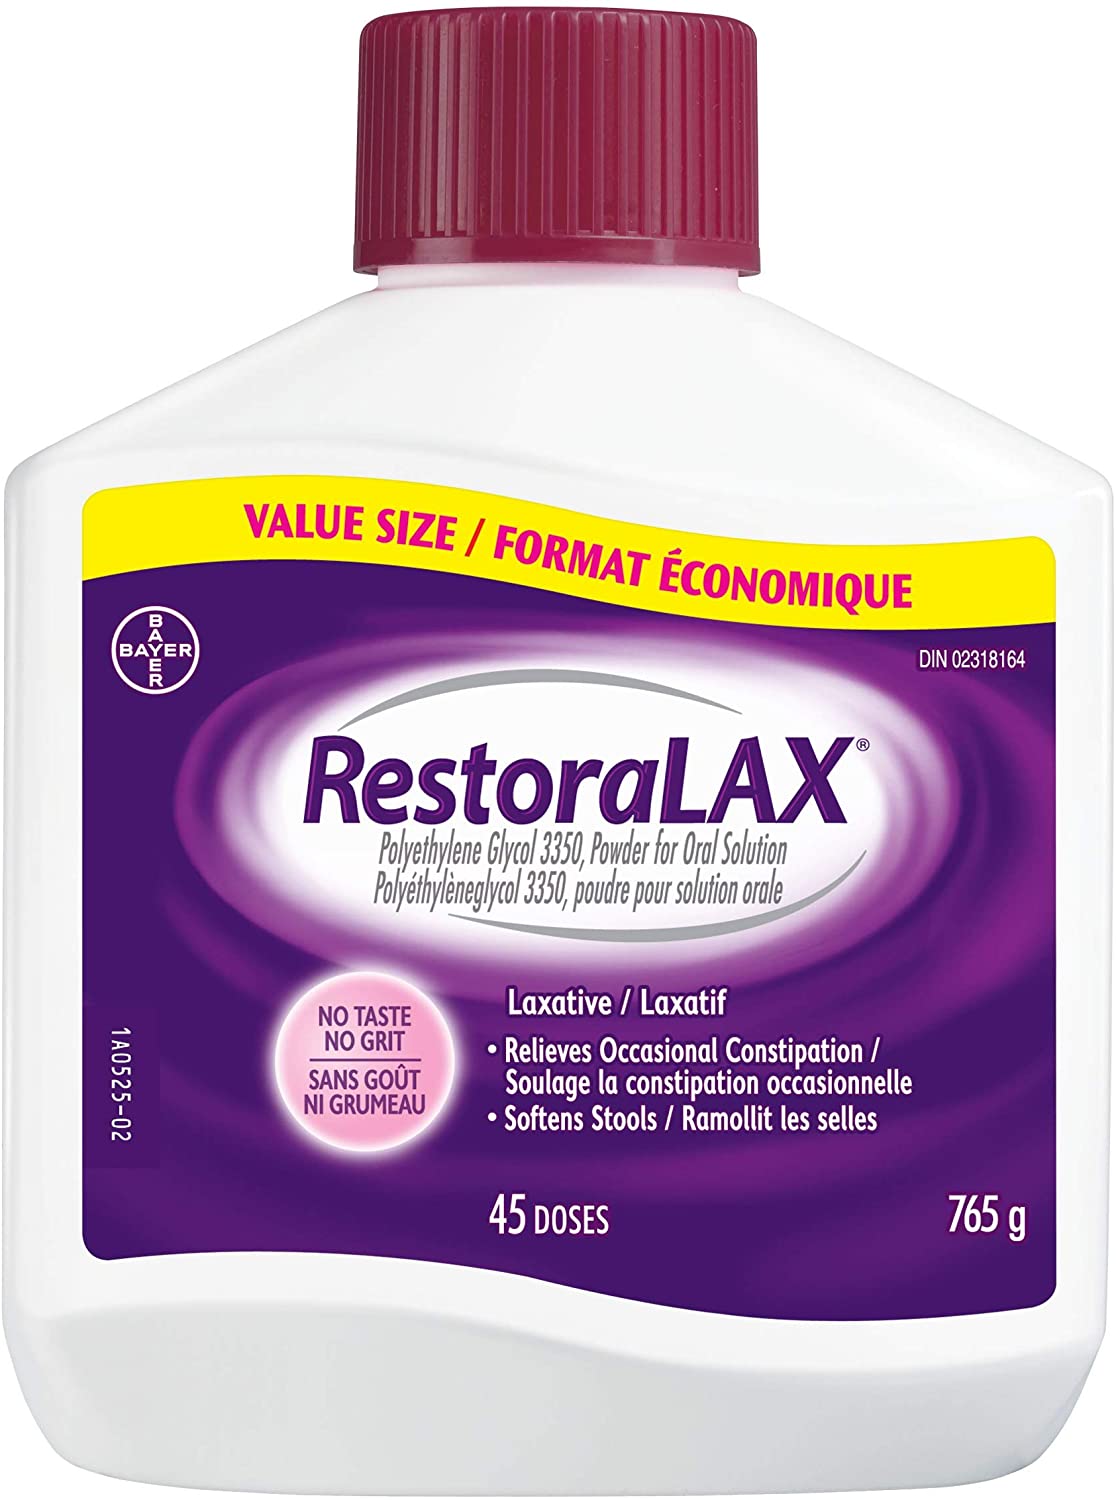 RestoraLax